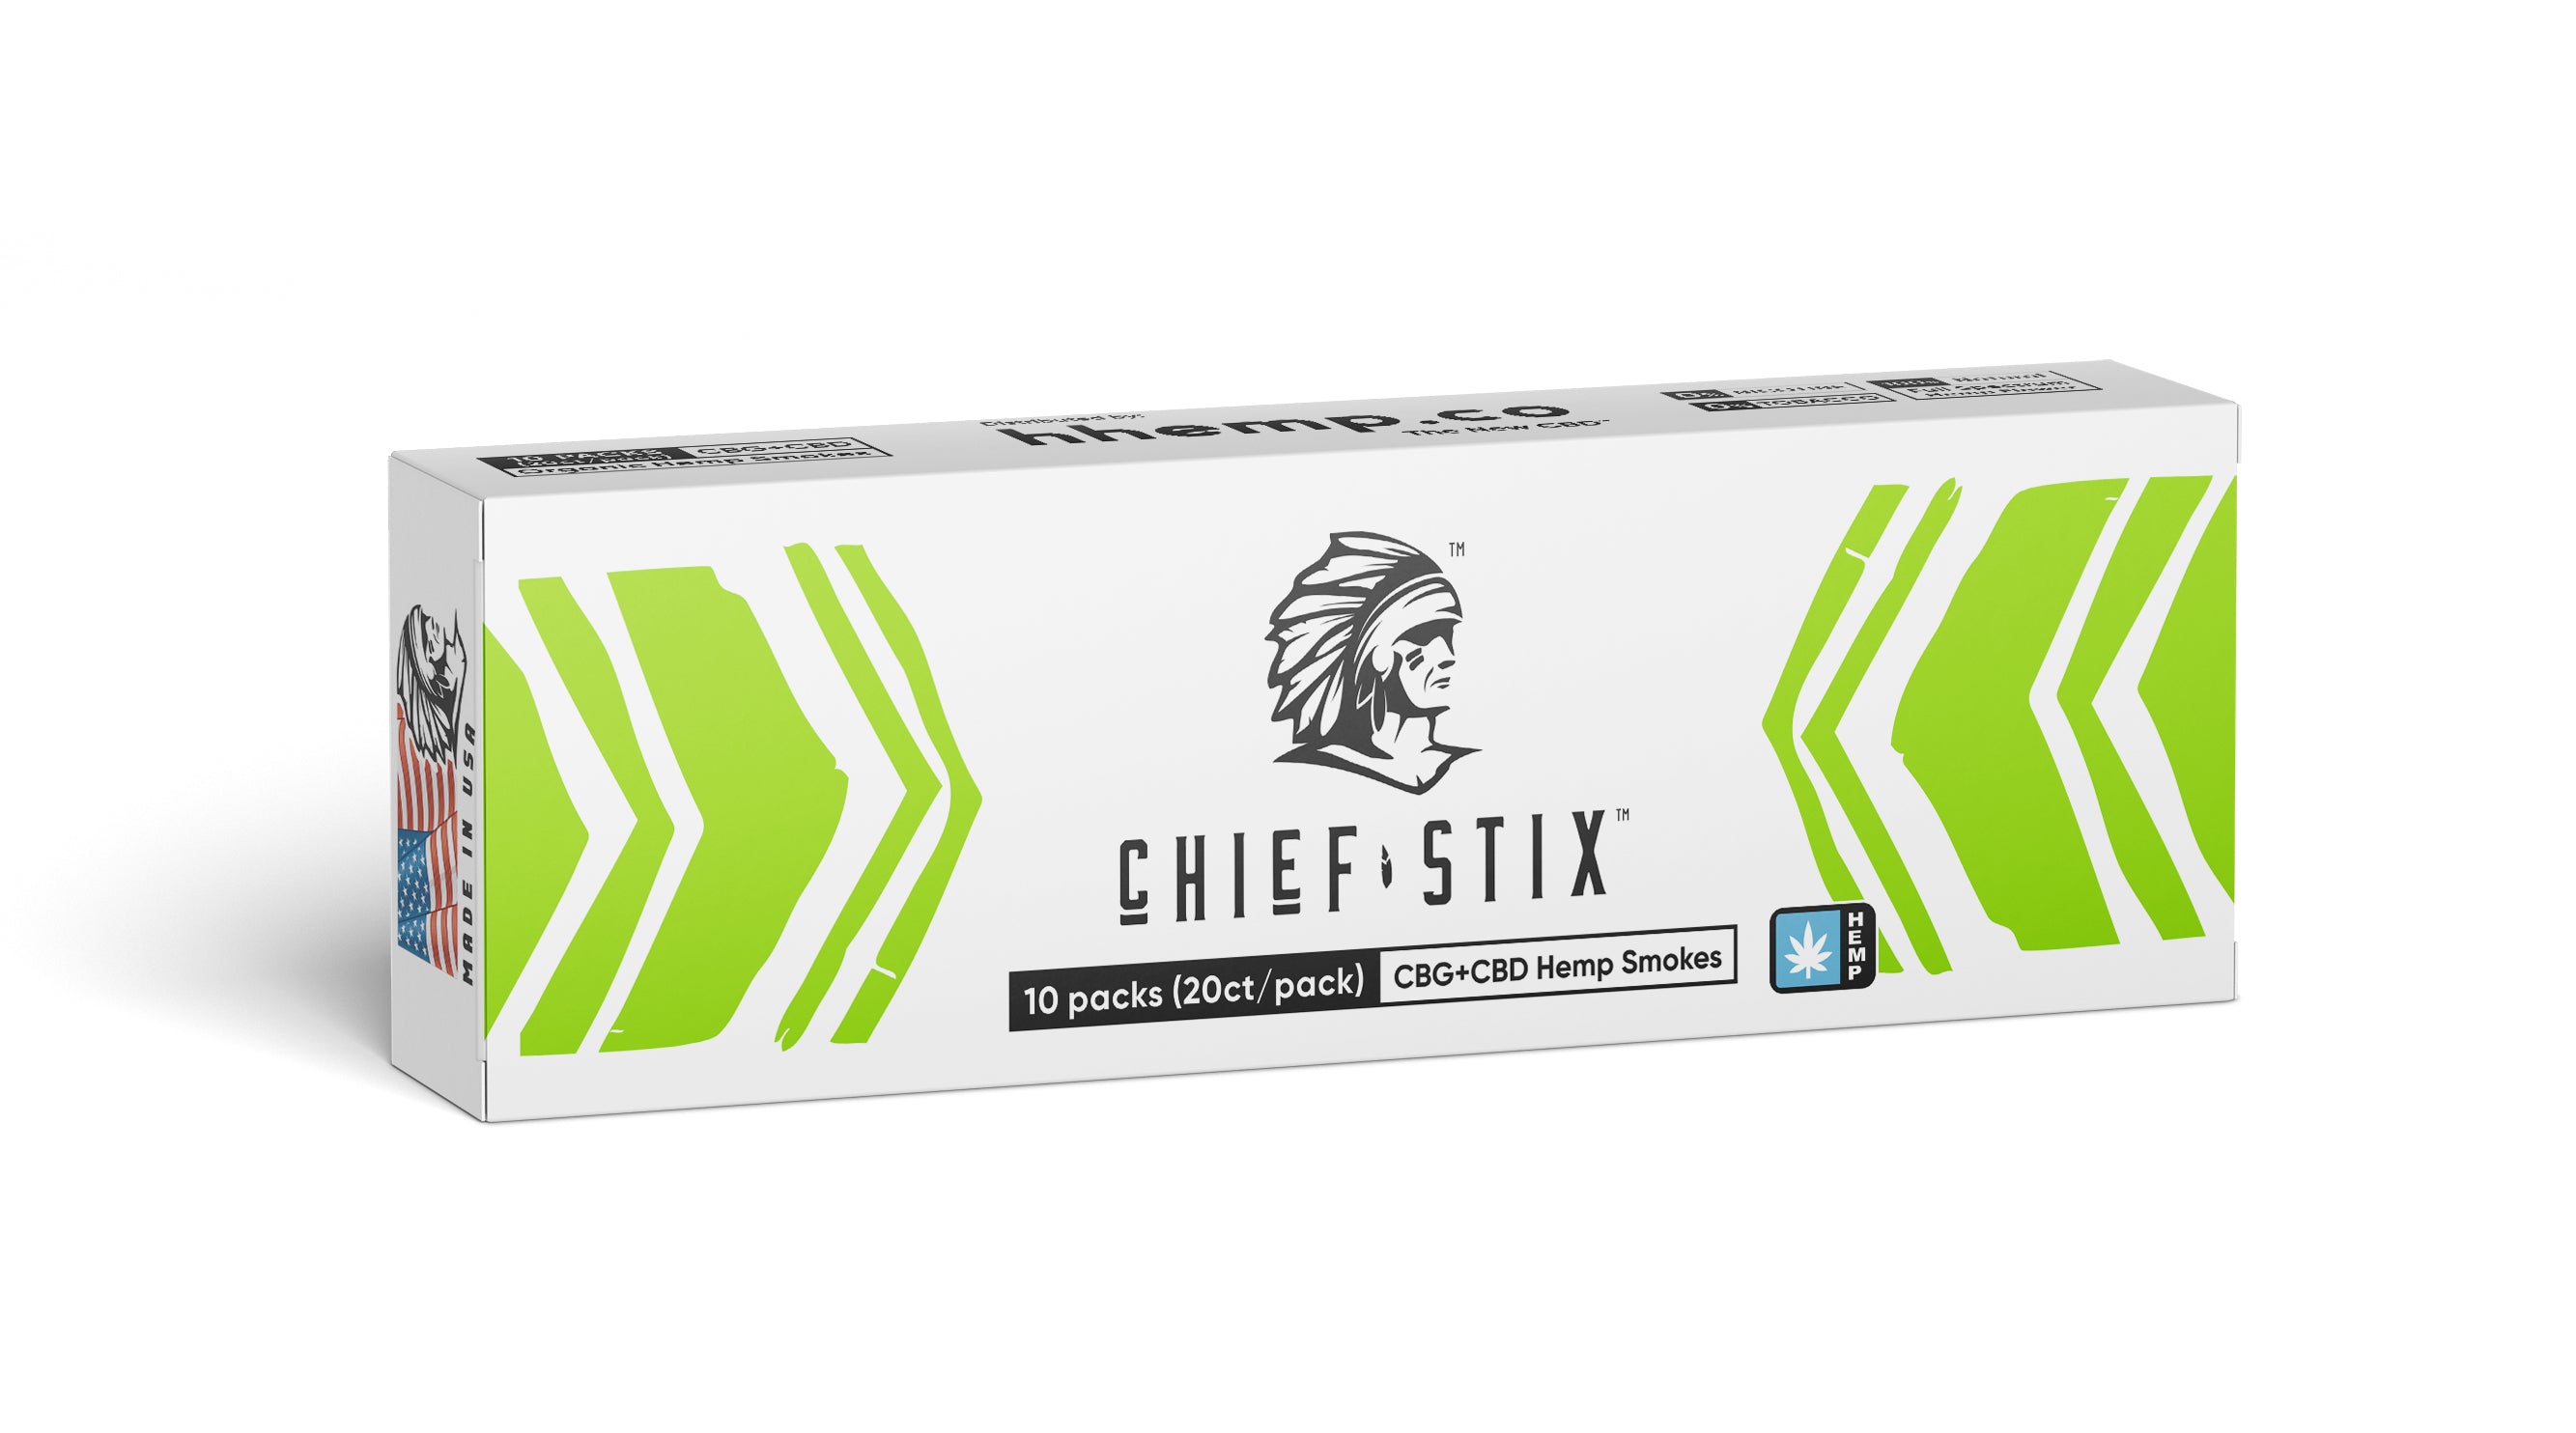 Chief Stix CBG+CBD Hemp Smokes Regular (10ct) - Carton